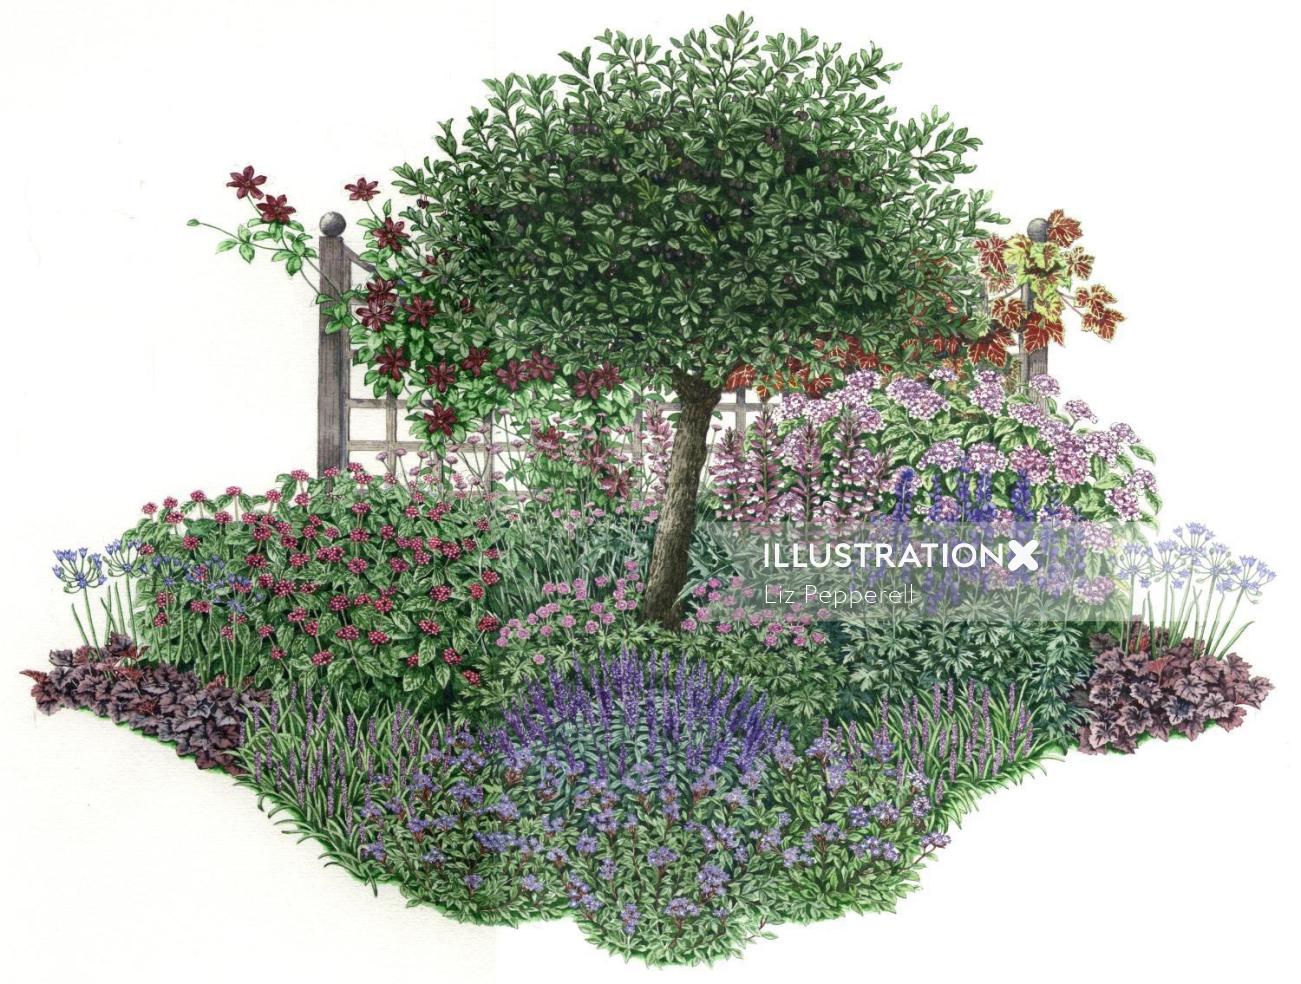 リズ・ペペレルによる植物の絵